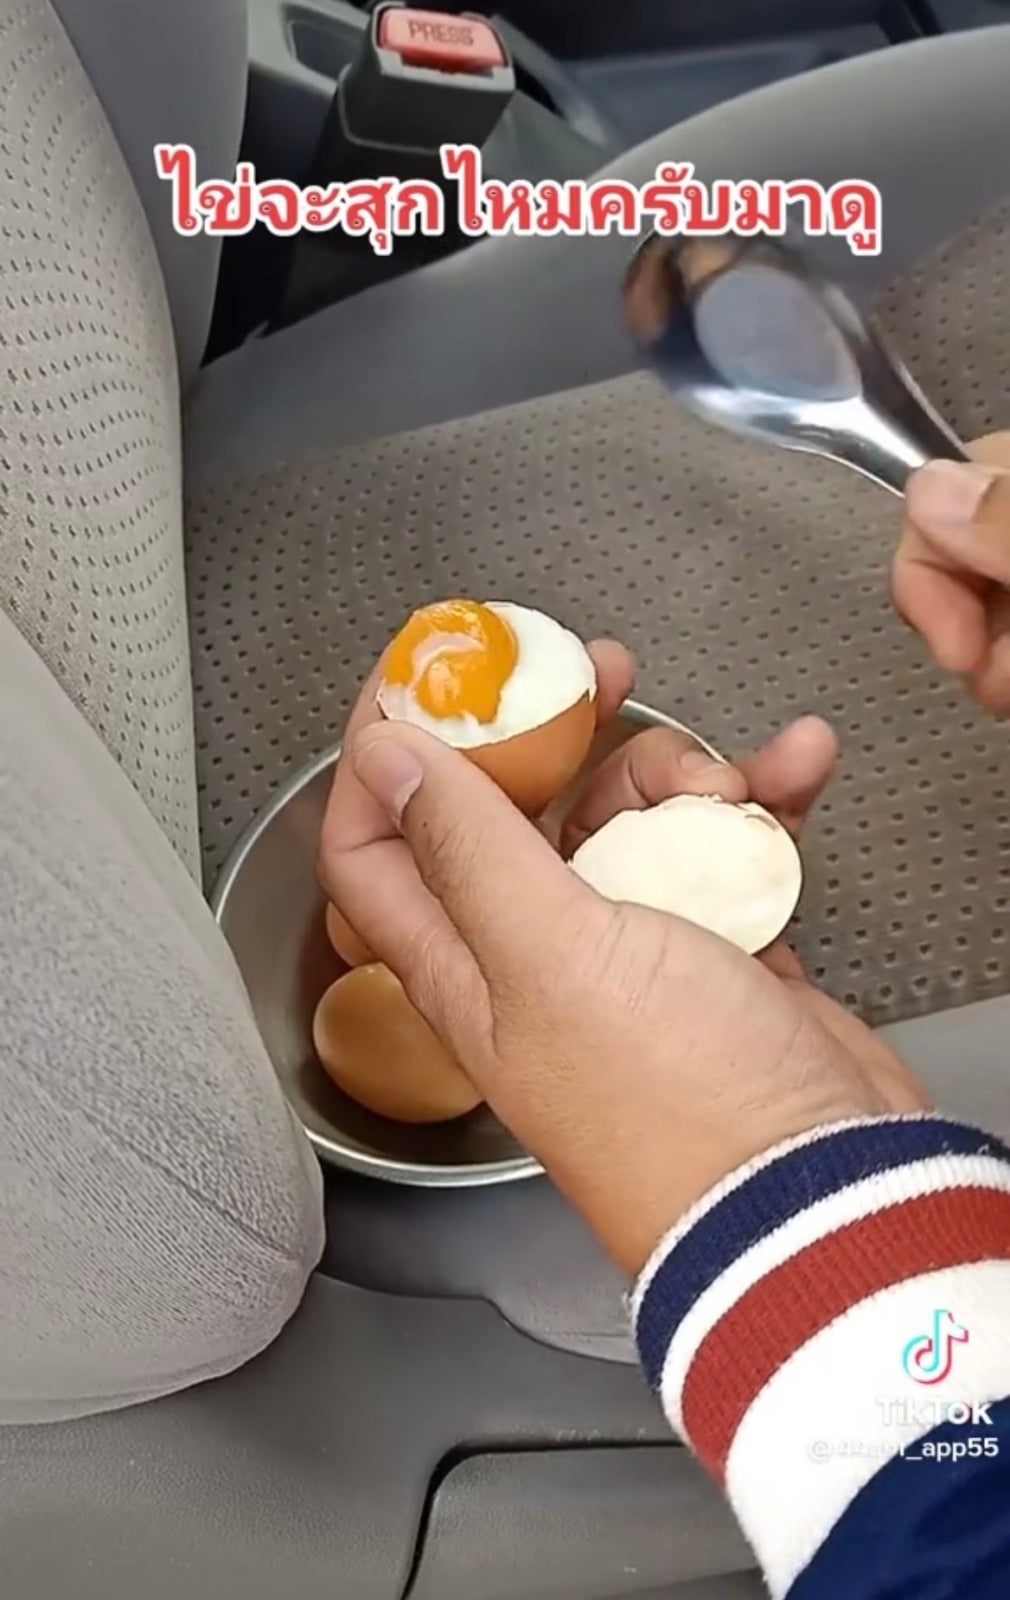 ทิ้งไข่ดิบไม่ในรถ ร้อนจนไข่สุก